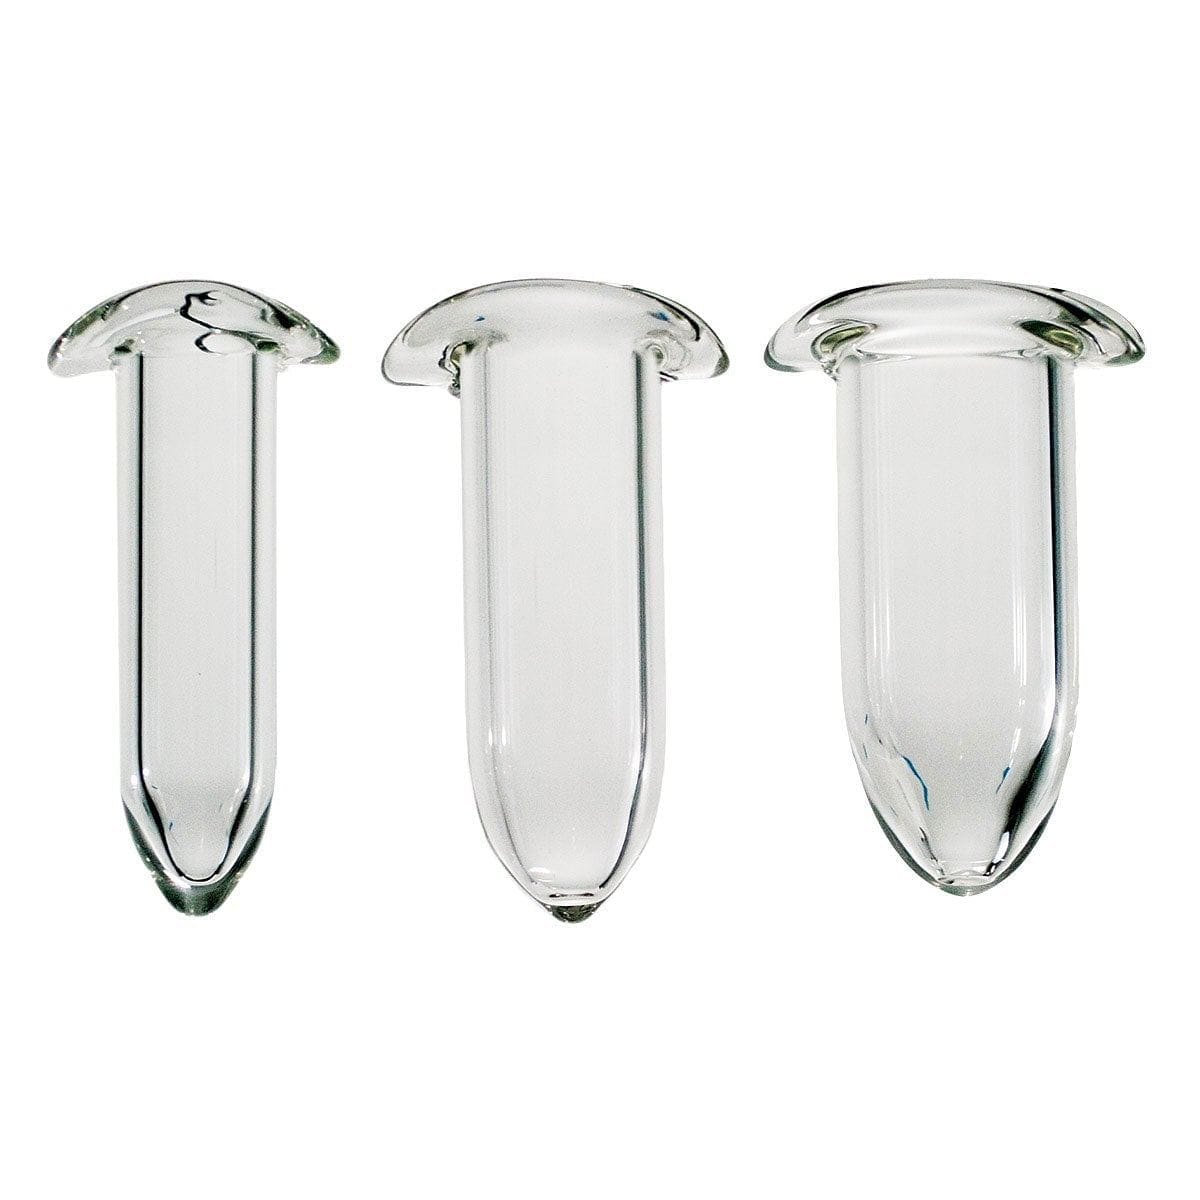 Crystal Delights Glass Dilator Set of 3 - Rolik®